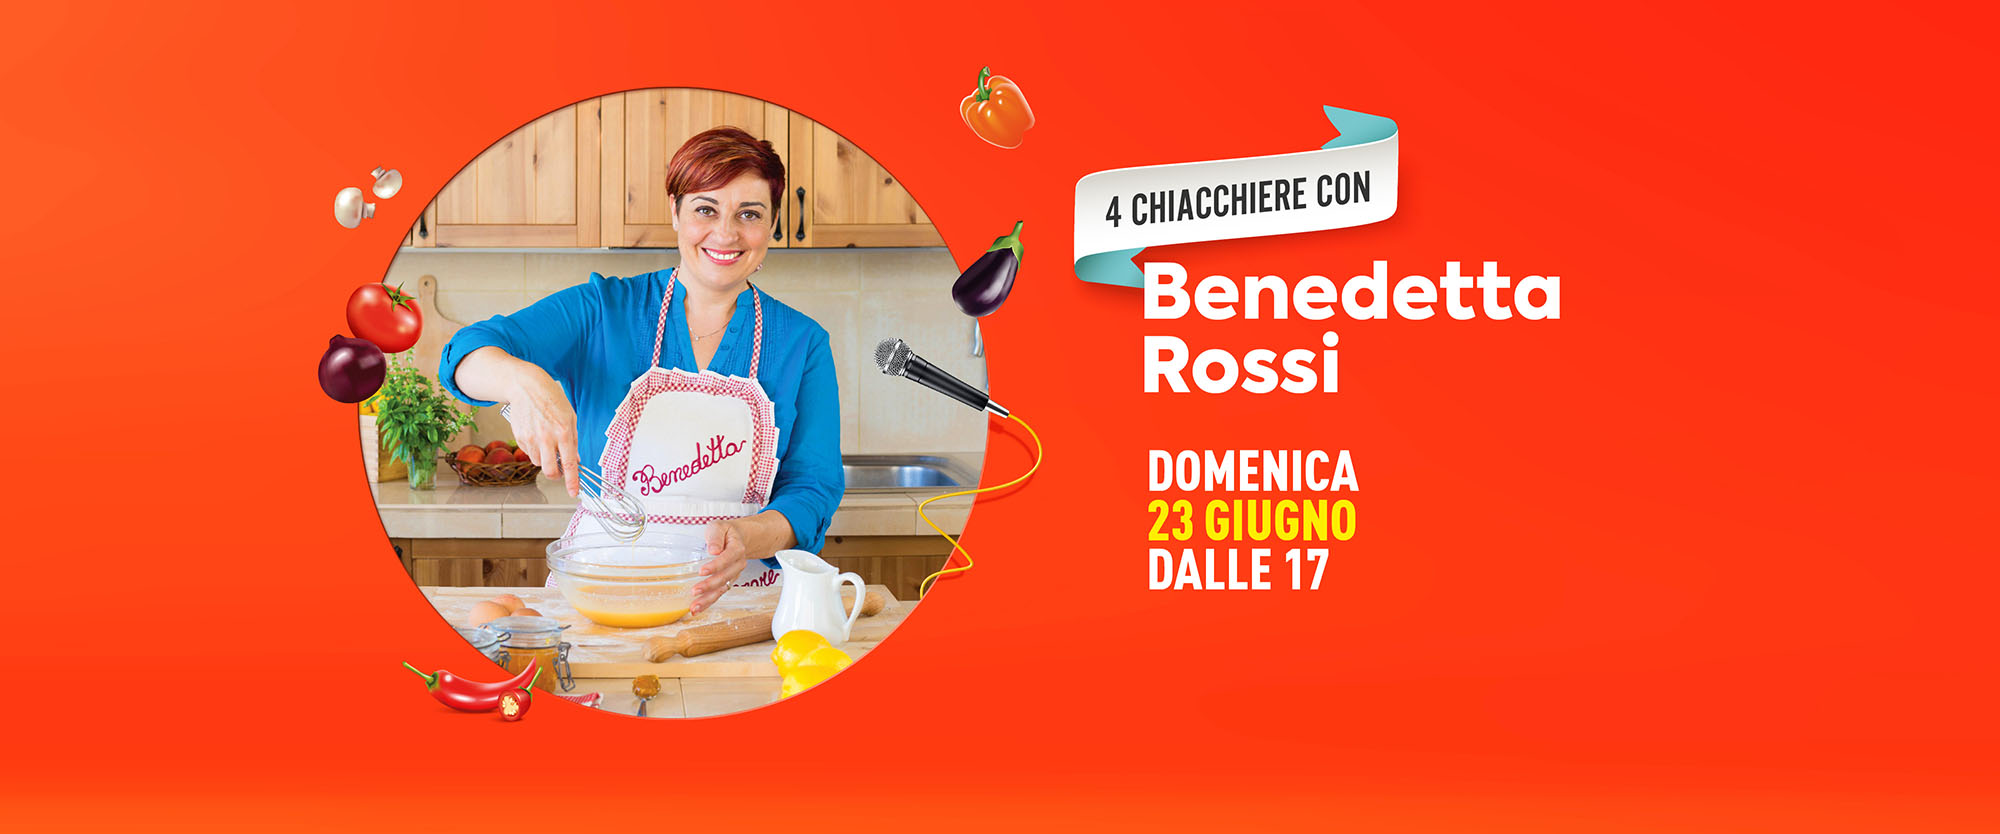 La cucina di casa mia, la food blogger Benedetta Rossi a San Benedetto -  Riviera Oggi